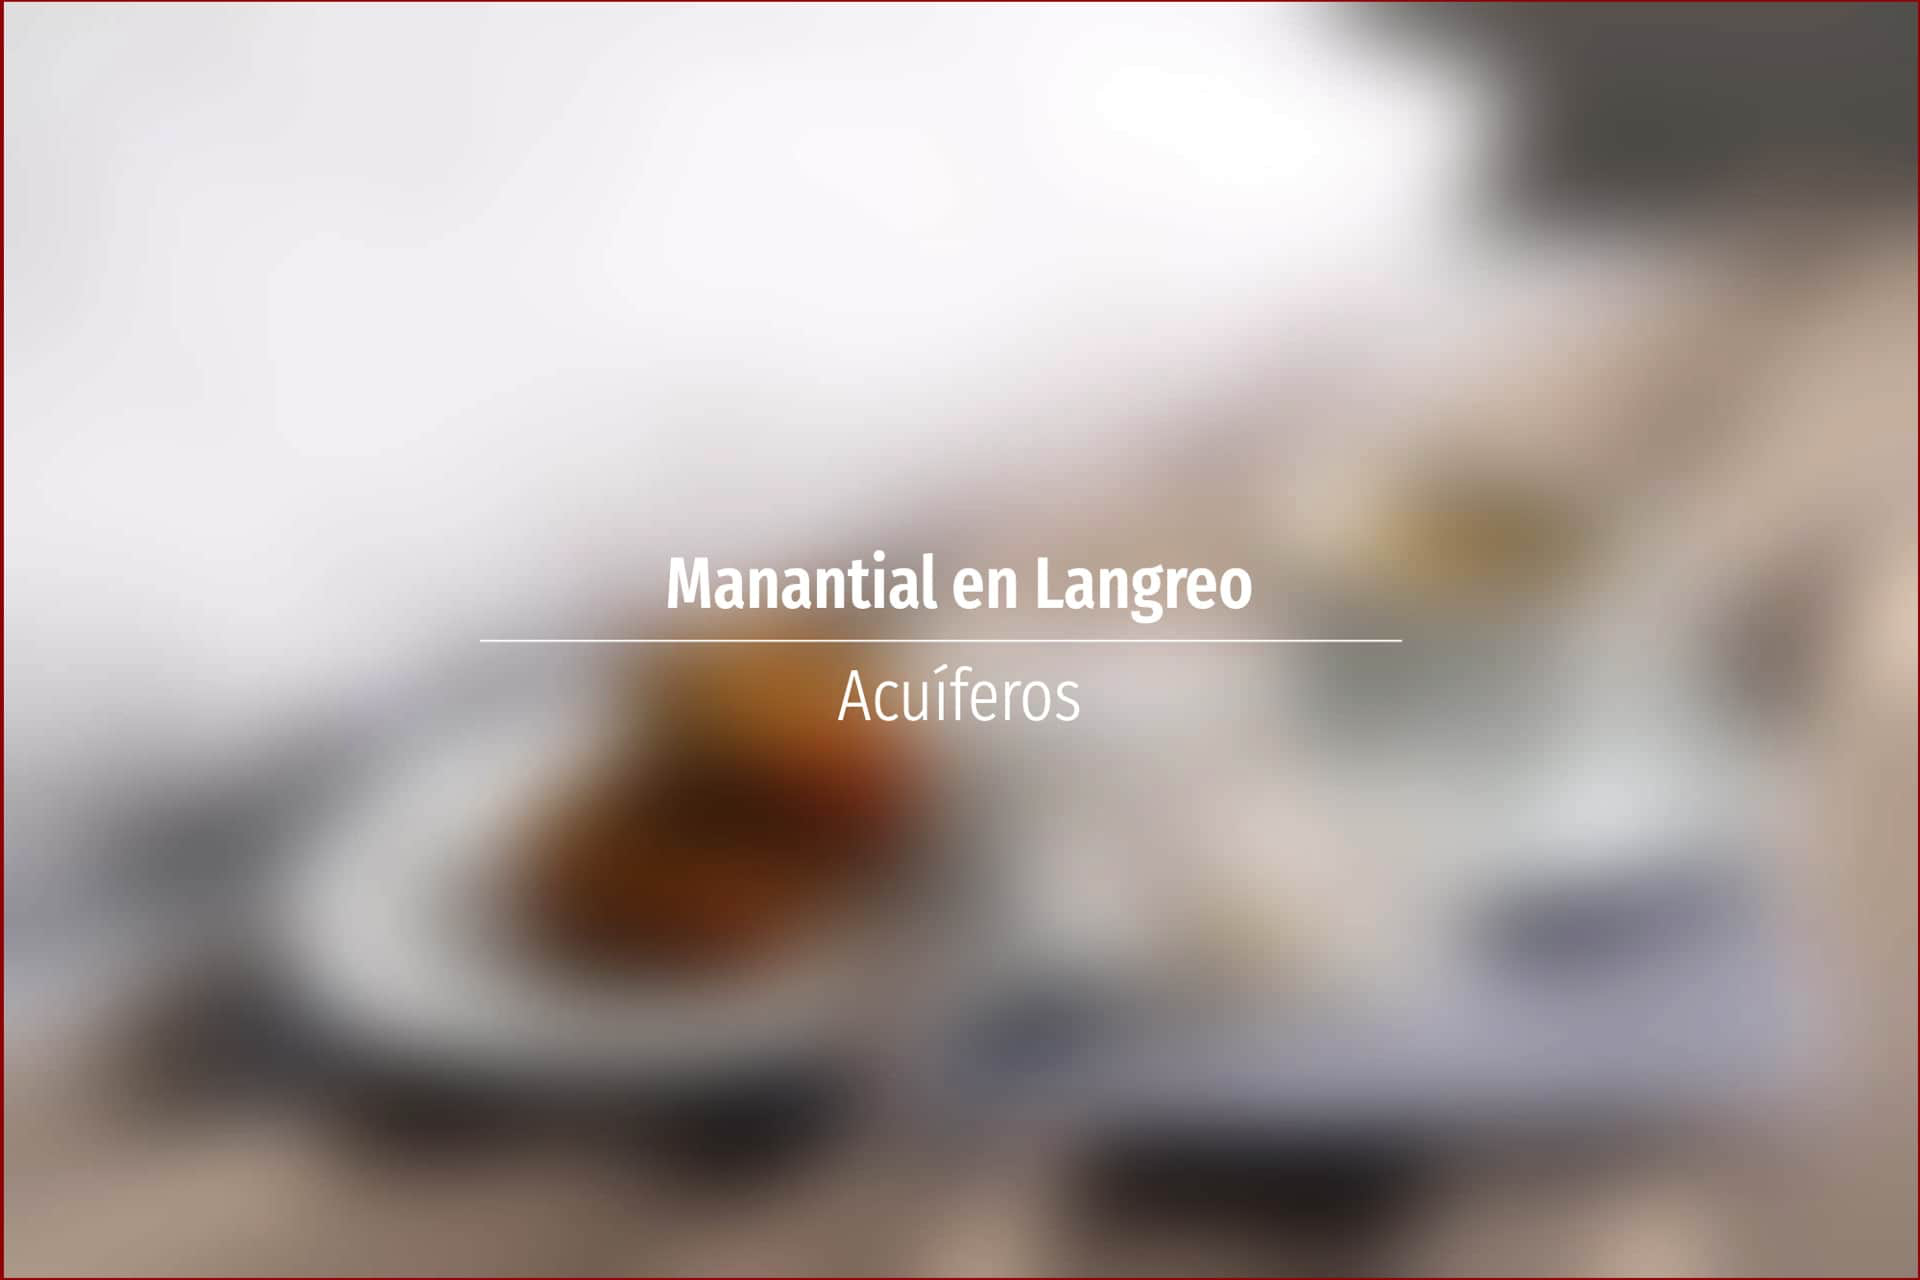 Manantial en Langreo